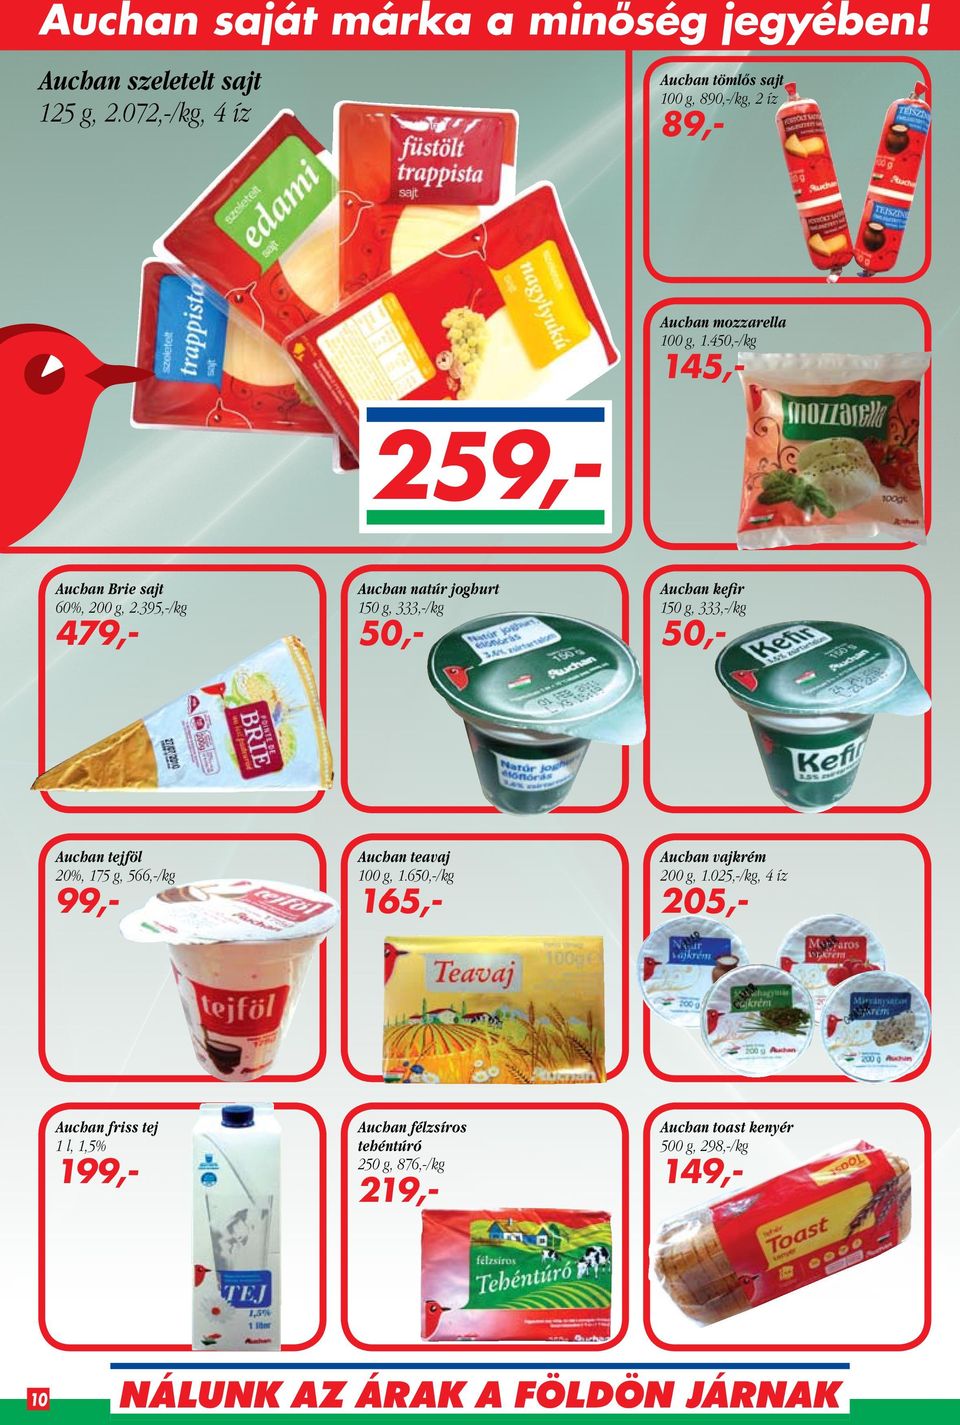 Auchan. saját márka a minőség jegyében! Auchan. bécsi virsli. 400 g  1.248,-/kg. 499,2011. február 25-től március 3-ig. - PDF Free Download